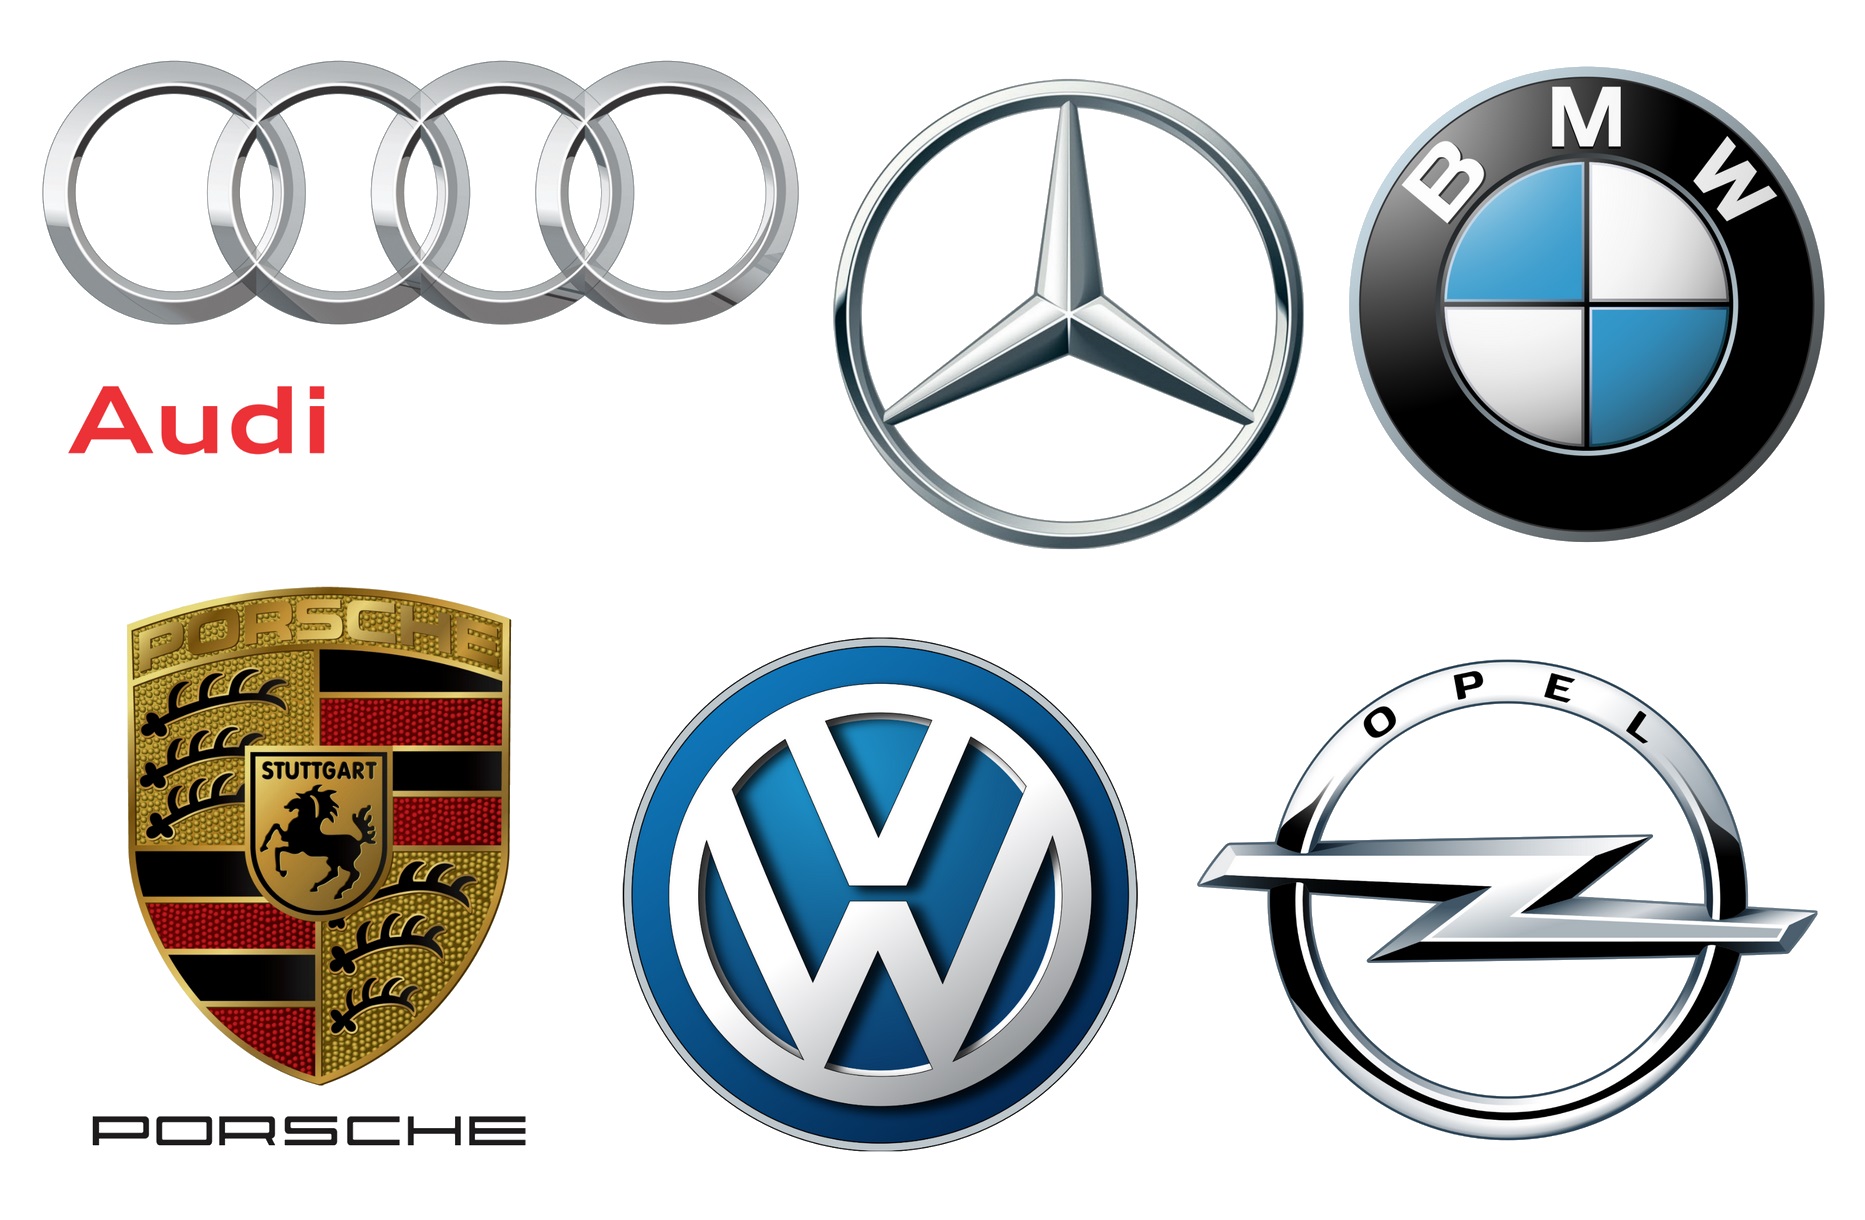  «Ας φύγει από την ευρωζώνη η Ελλάδα», λένε οι γερμανικές αυτοκινητοβιομηχανίες